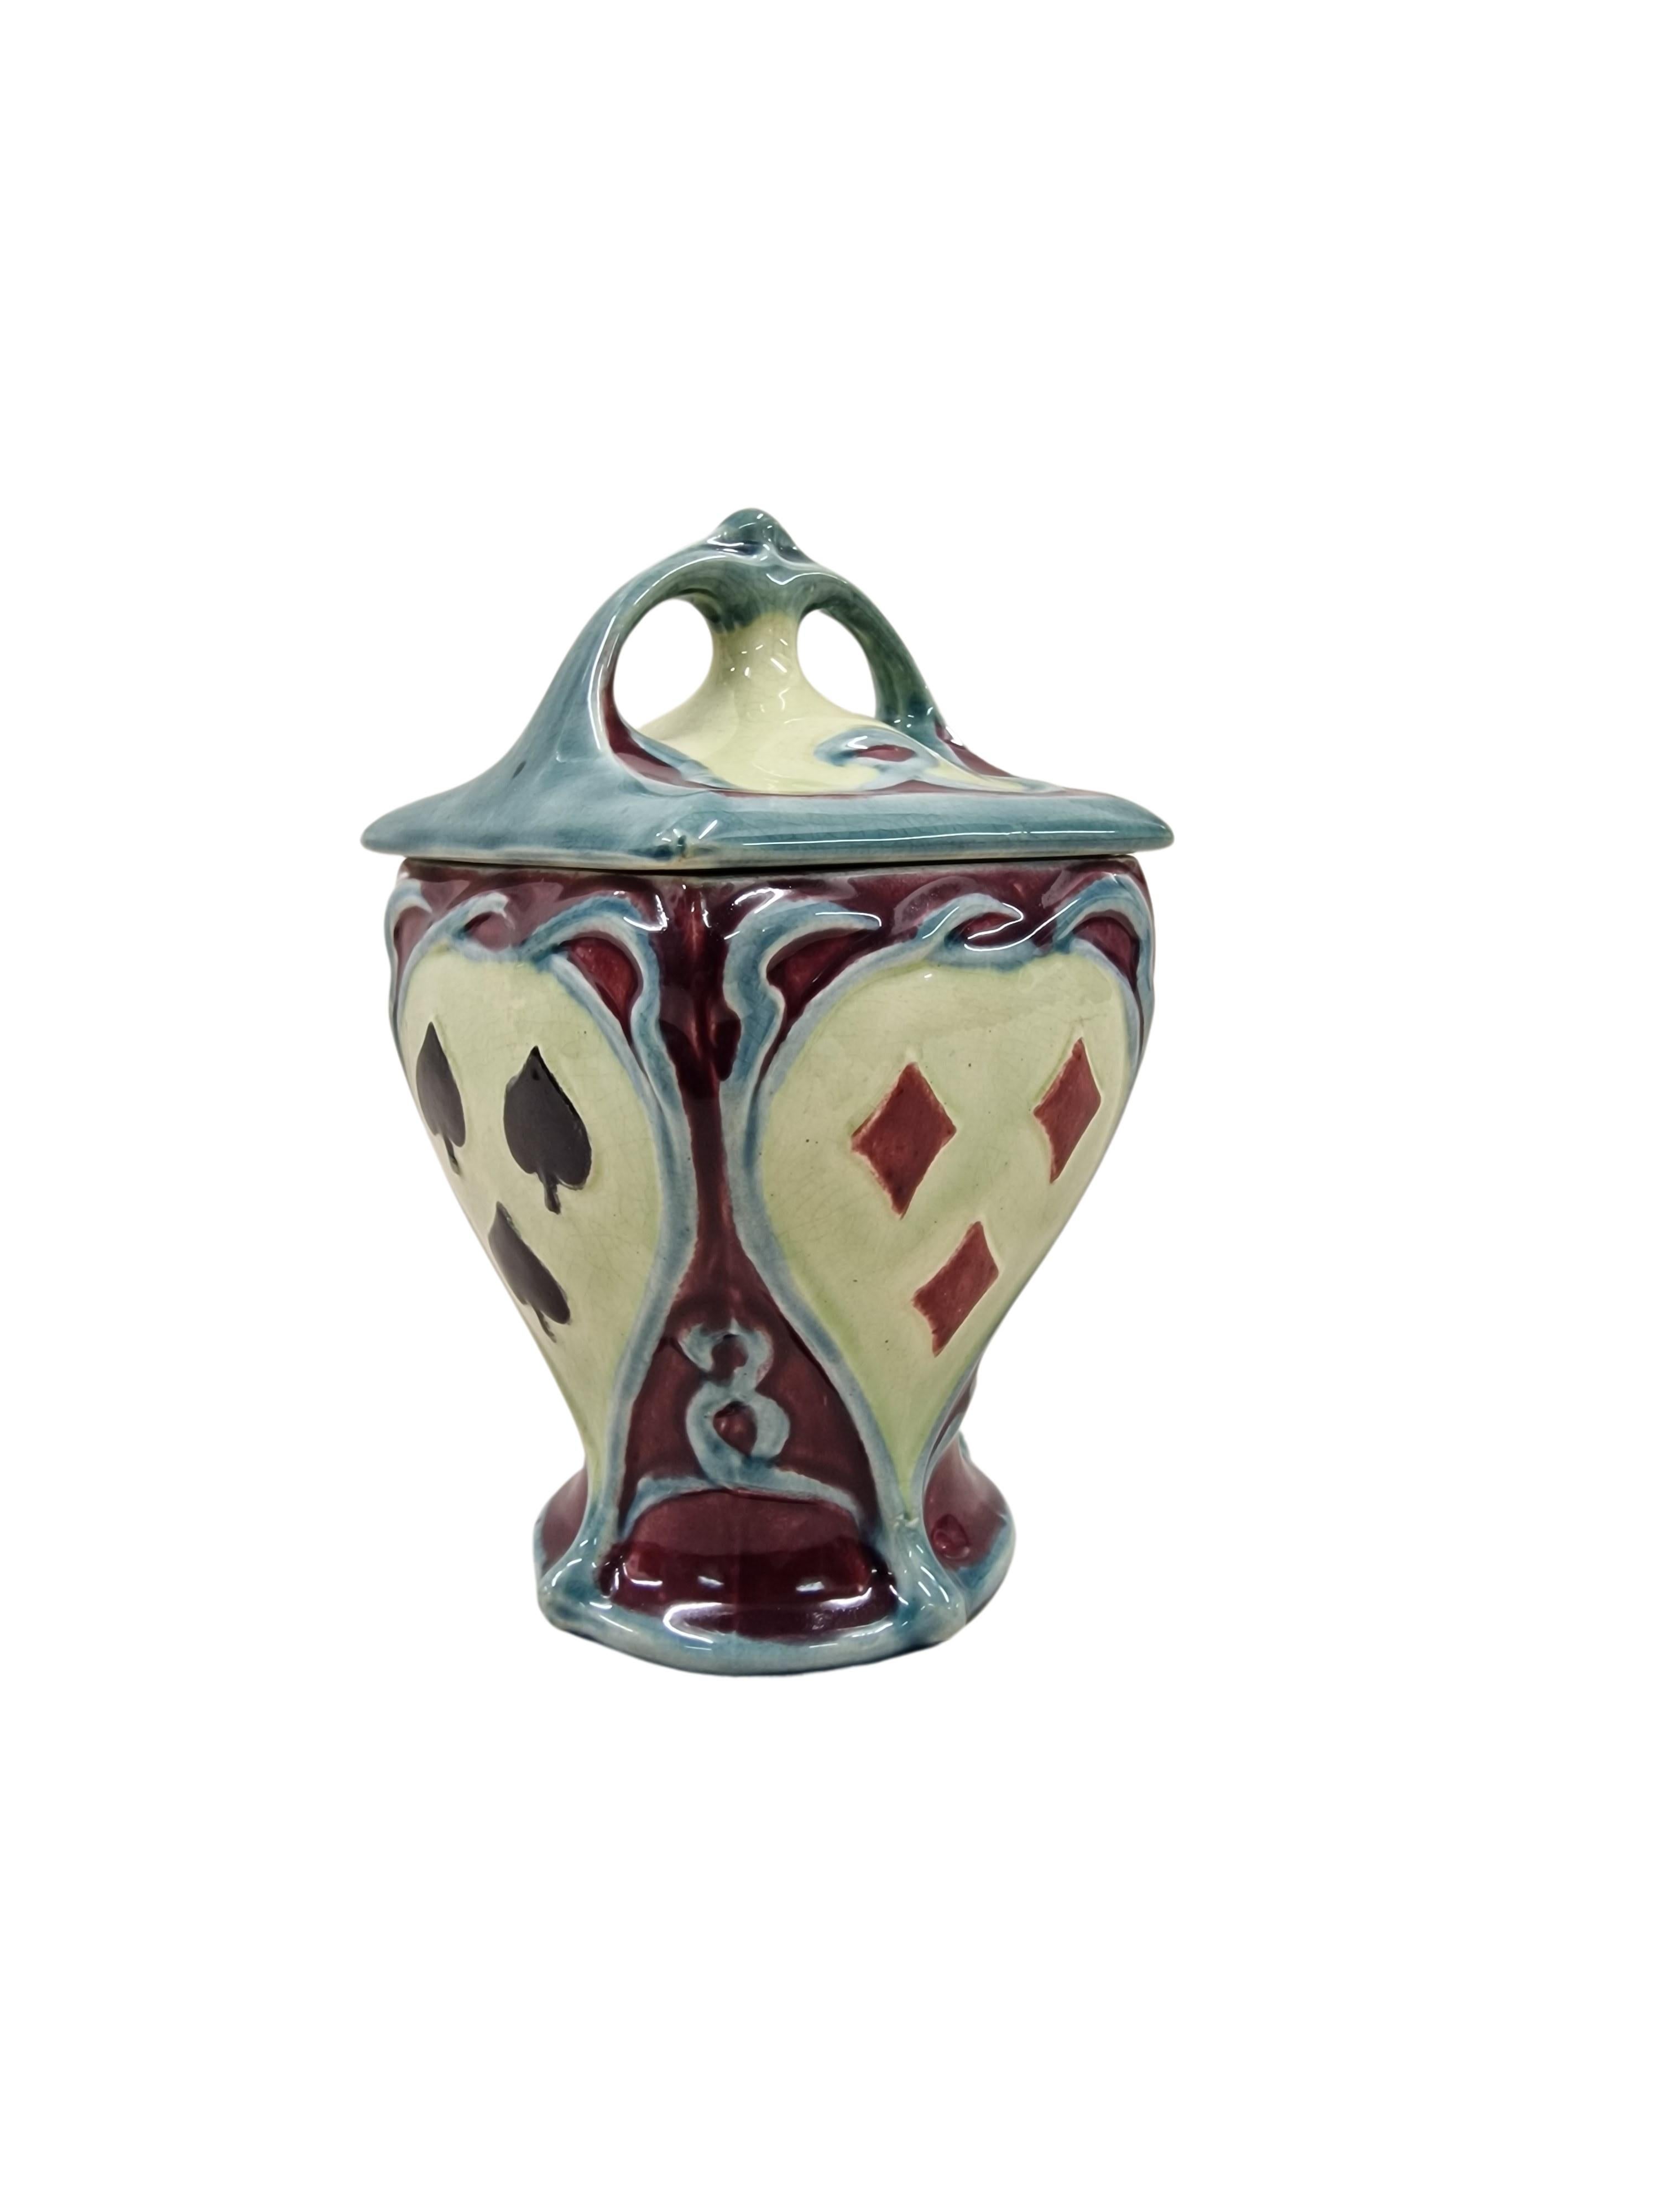 Ceramic Exceptionally rare tobacco box pot, play cards decor, Art Nouveau, 1900